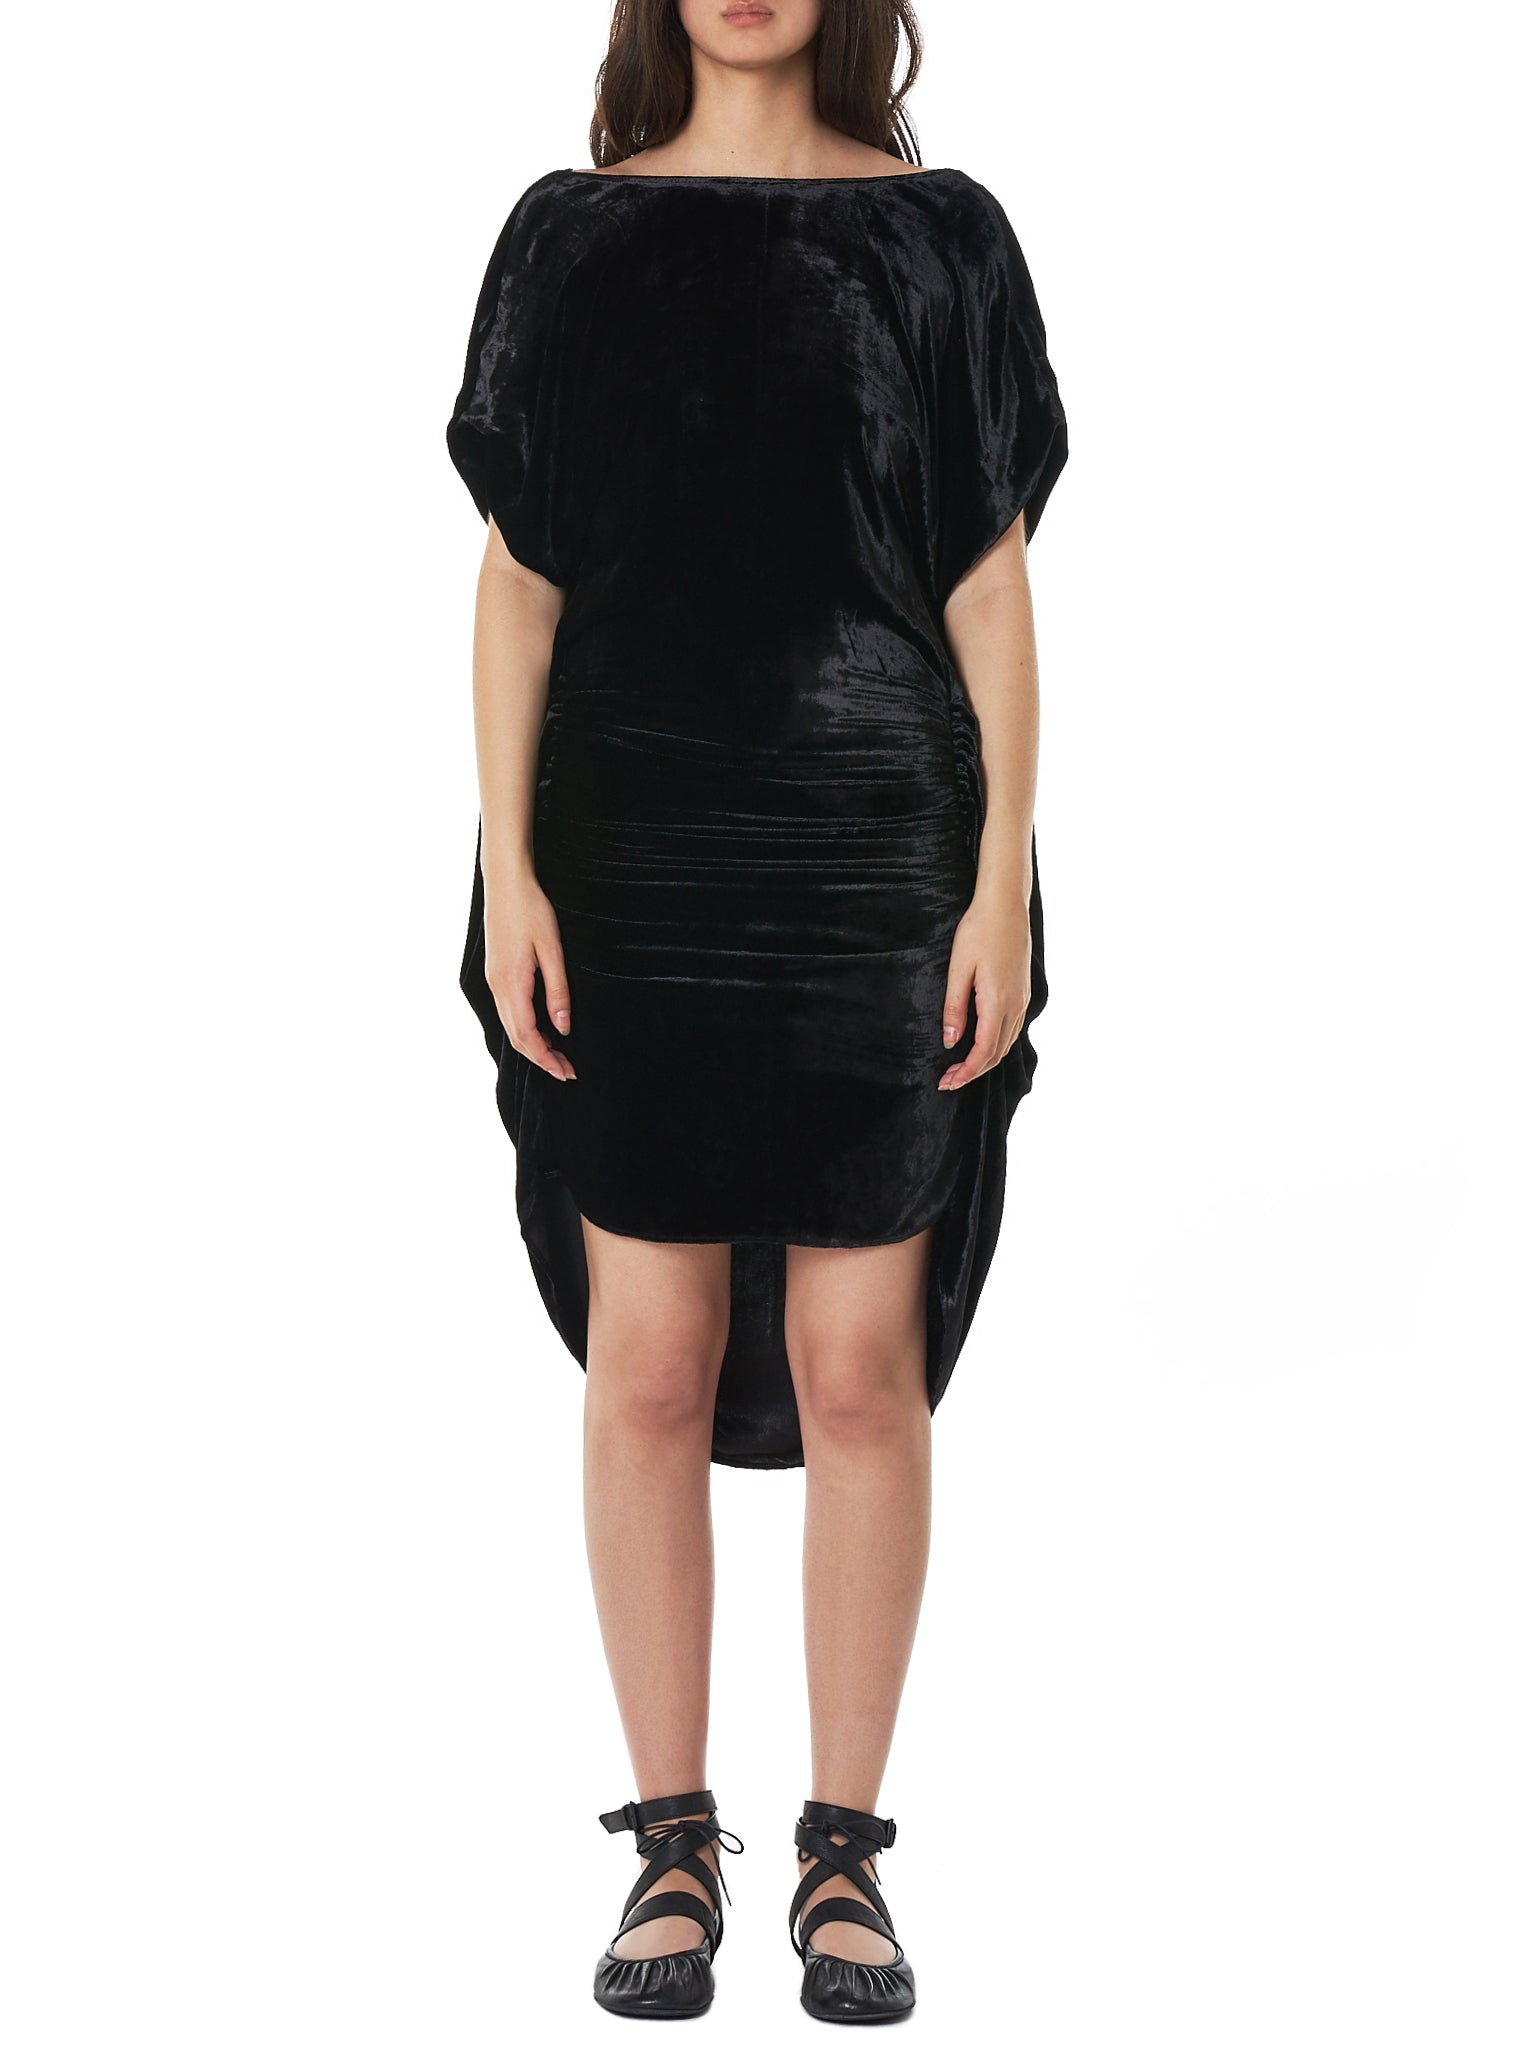 Paula Knorr Short Dress - Hlorenzo Front